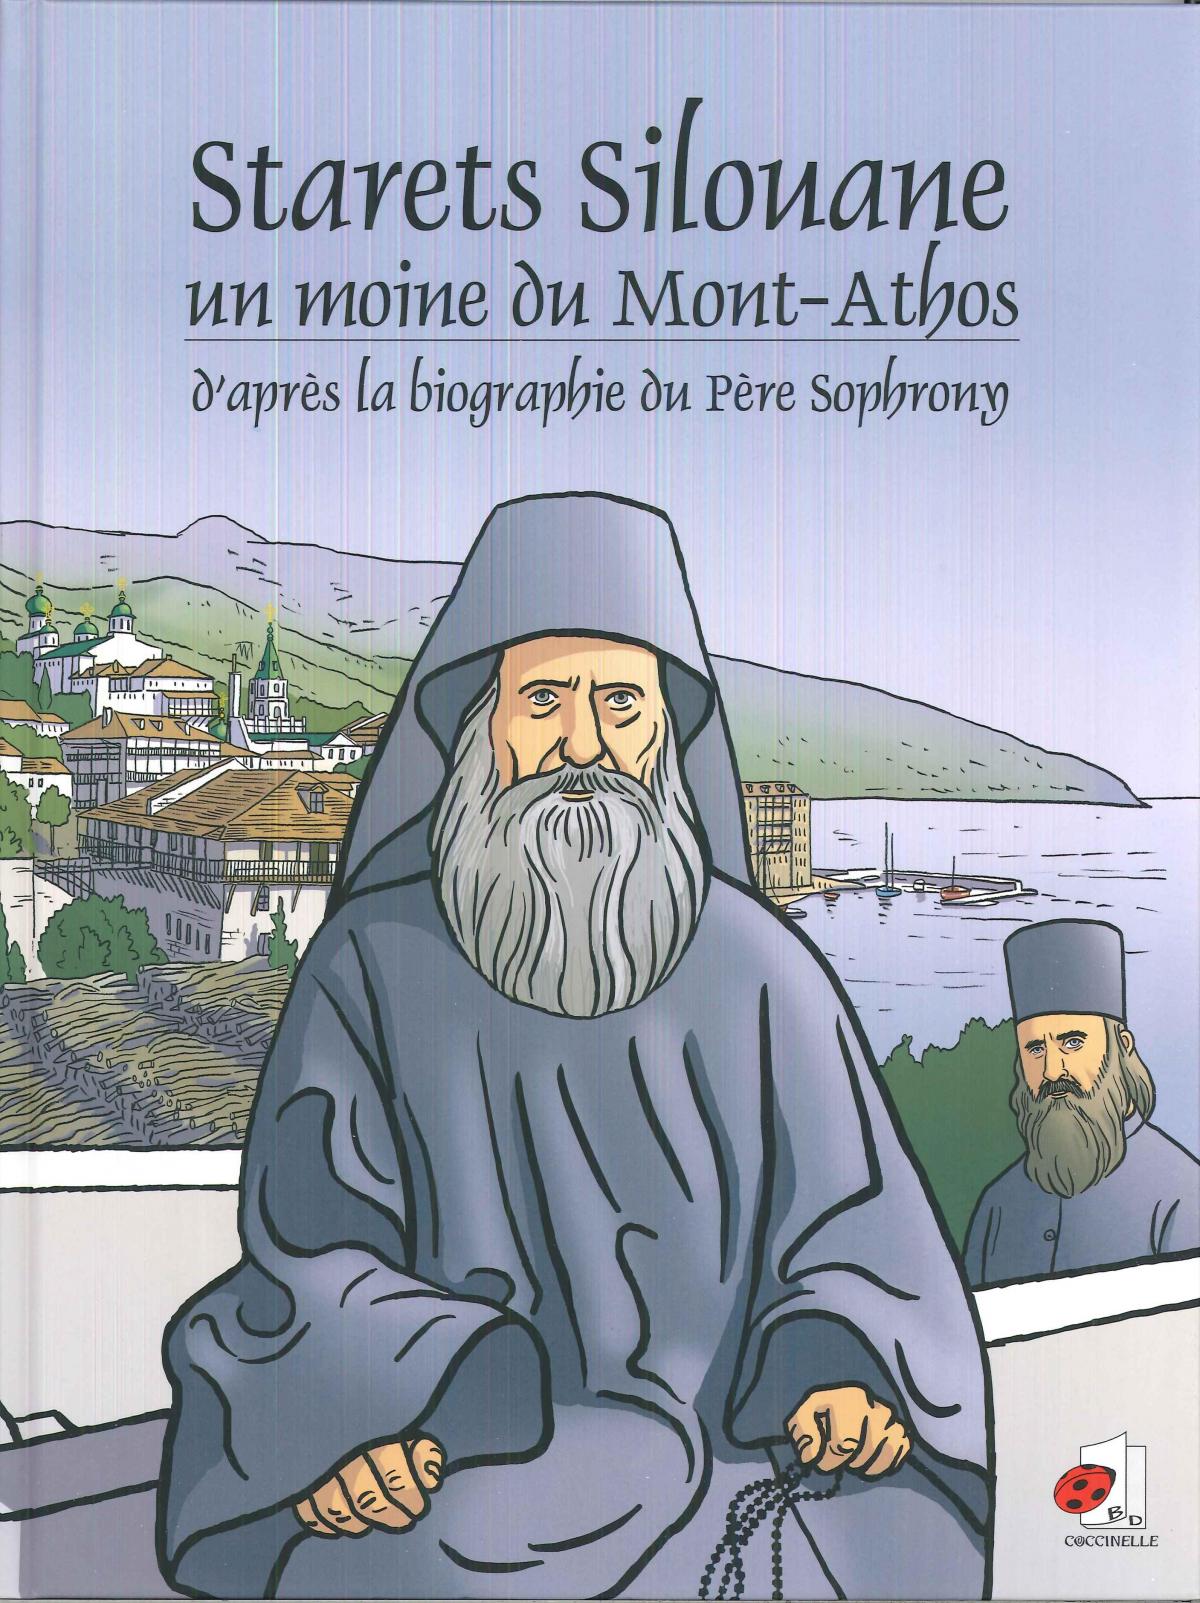 Starets Silouane, un moine du Mont-Athos